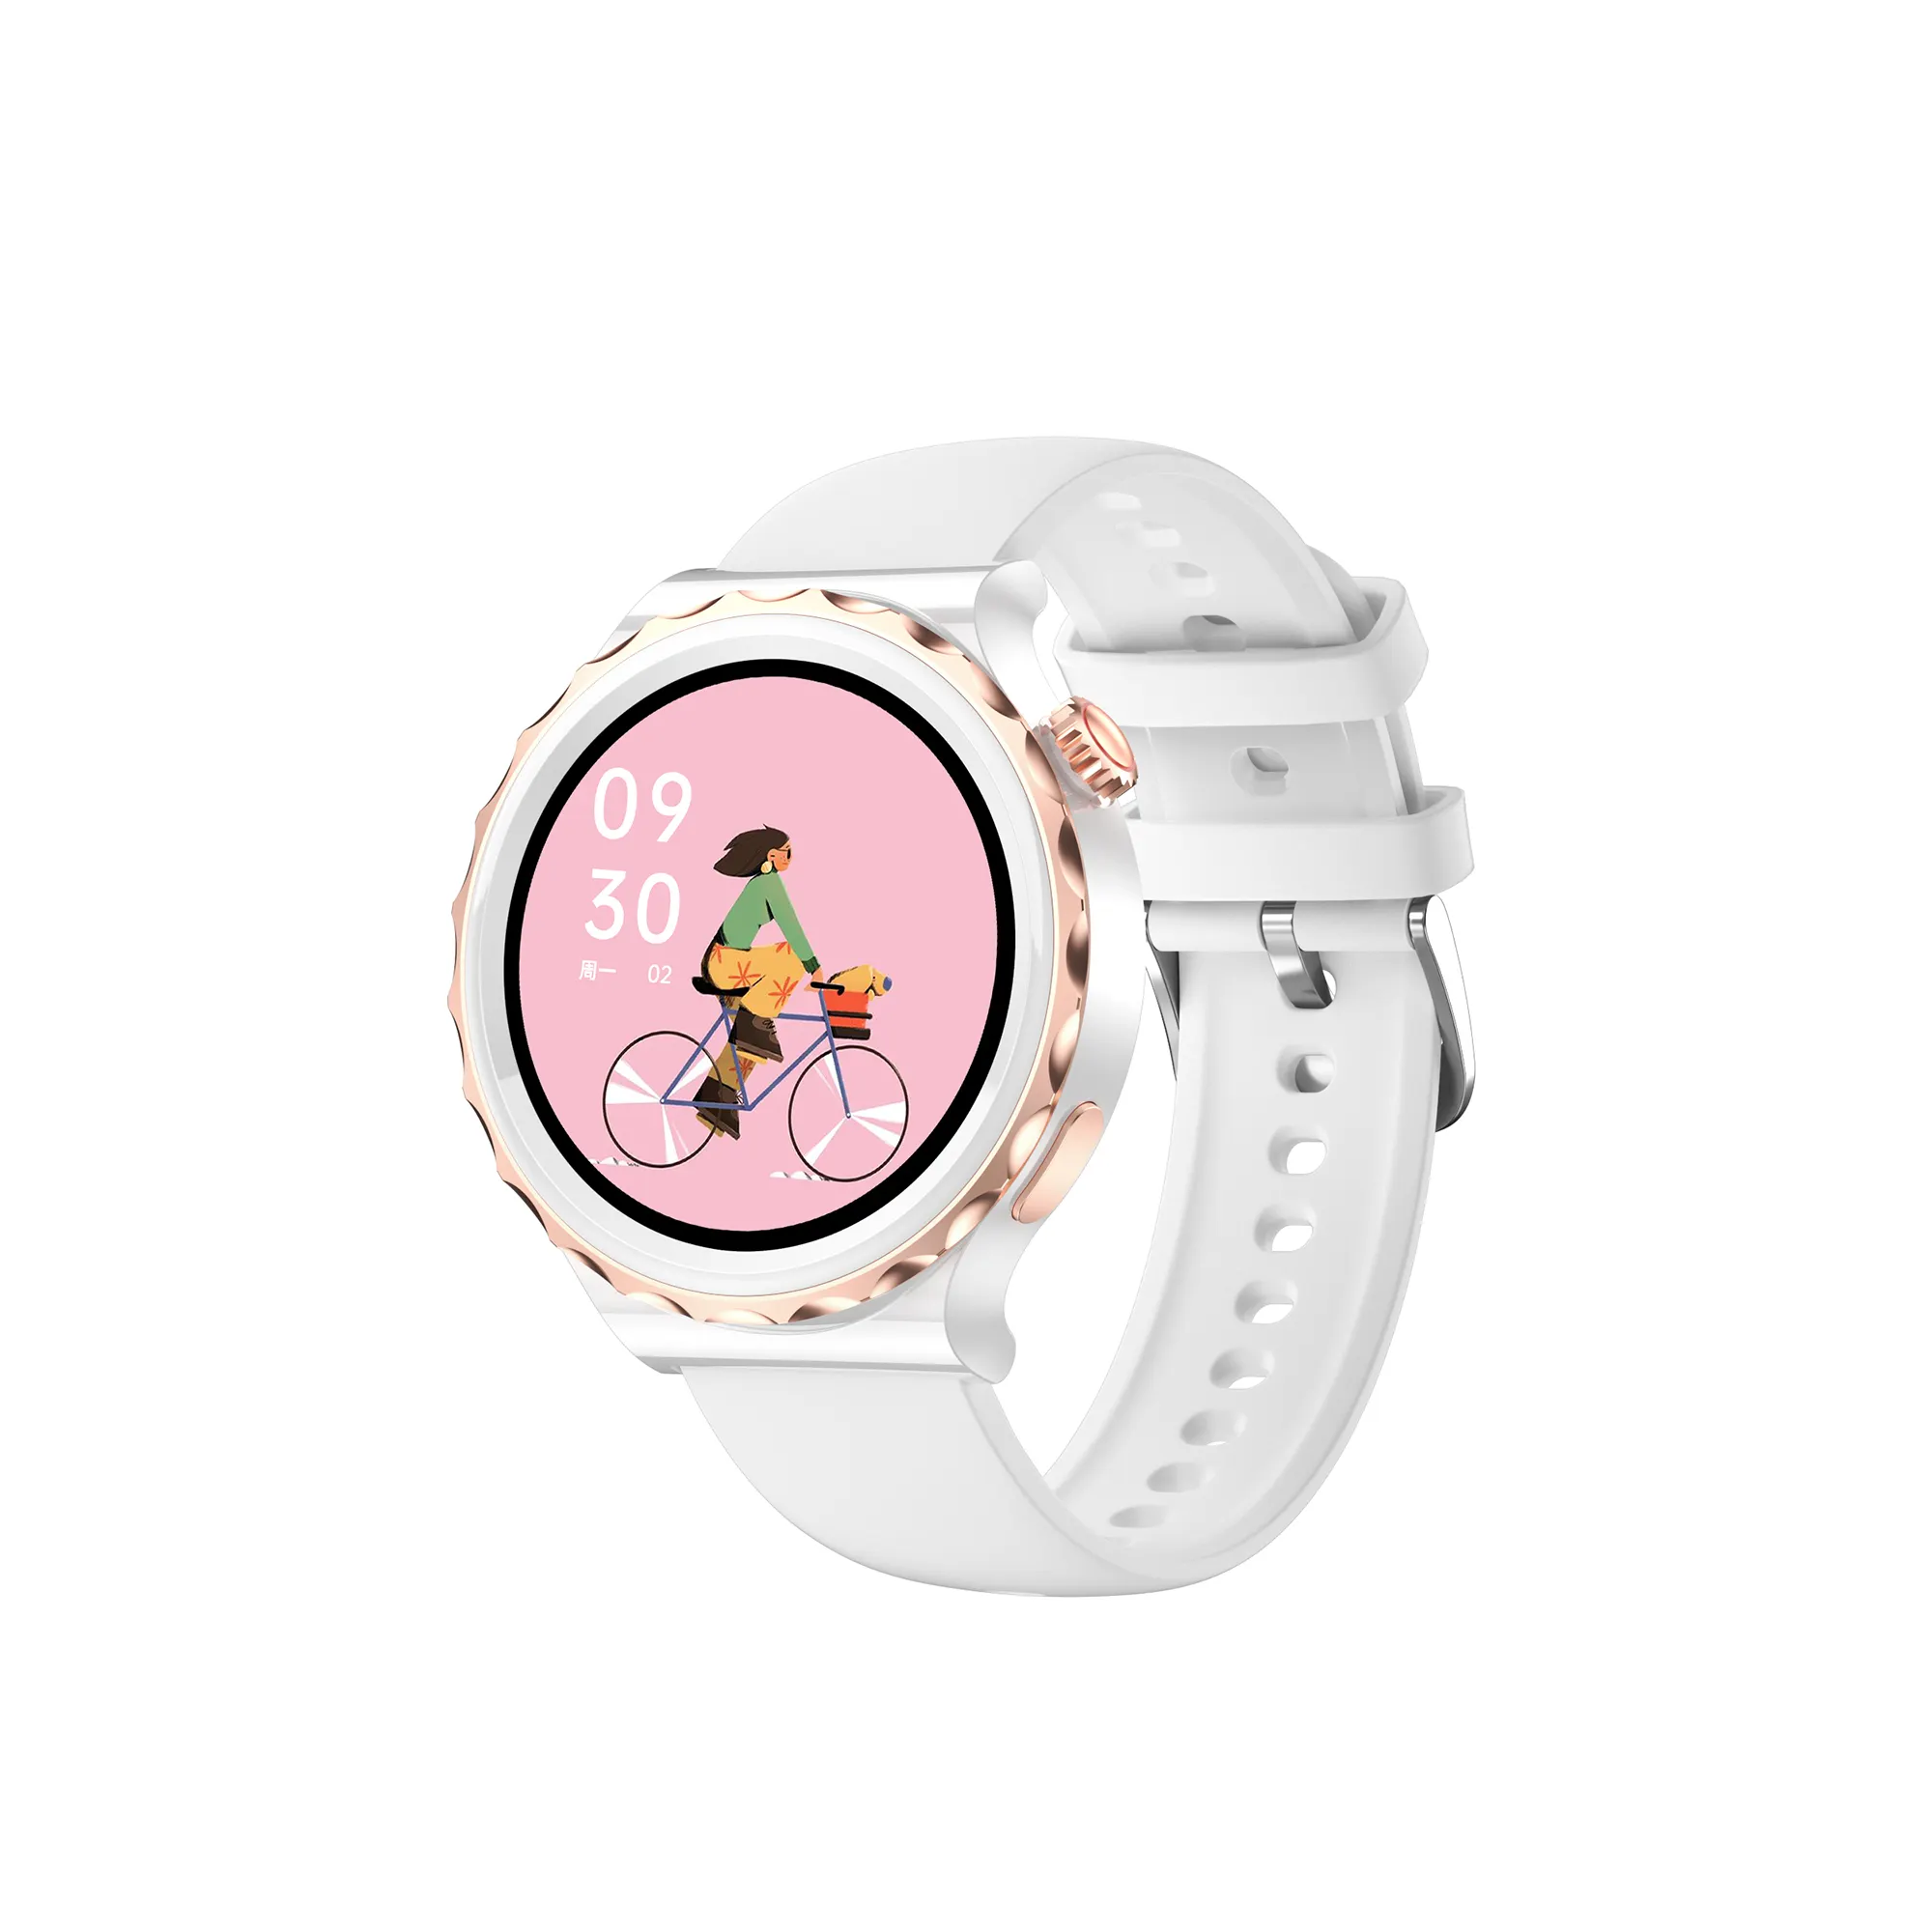 새로운 디자인 사용자 정의 로고 아이 Smartwatch 스포츠 안드로이드 스마트 시계 라운드 스크린 IP68 방수 패션 스마트 시계 아이폰